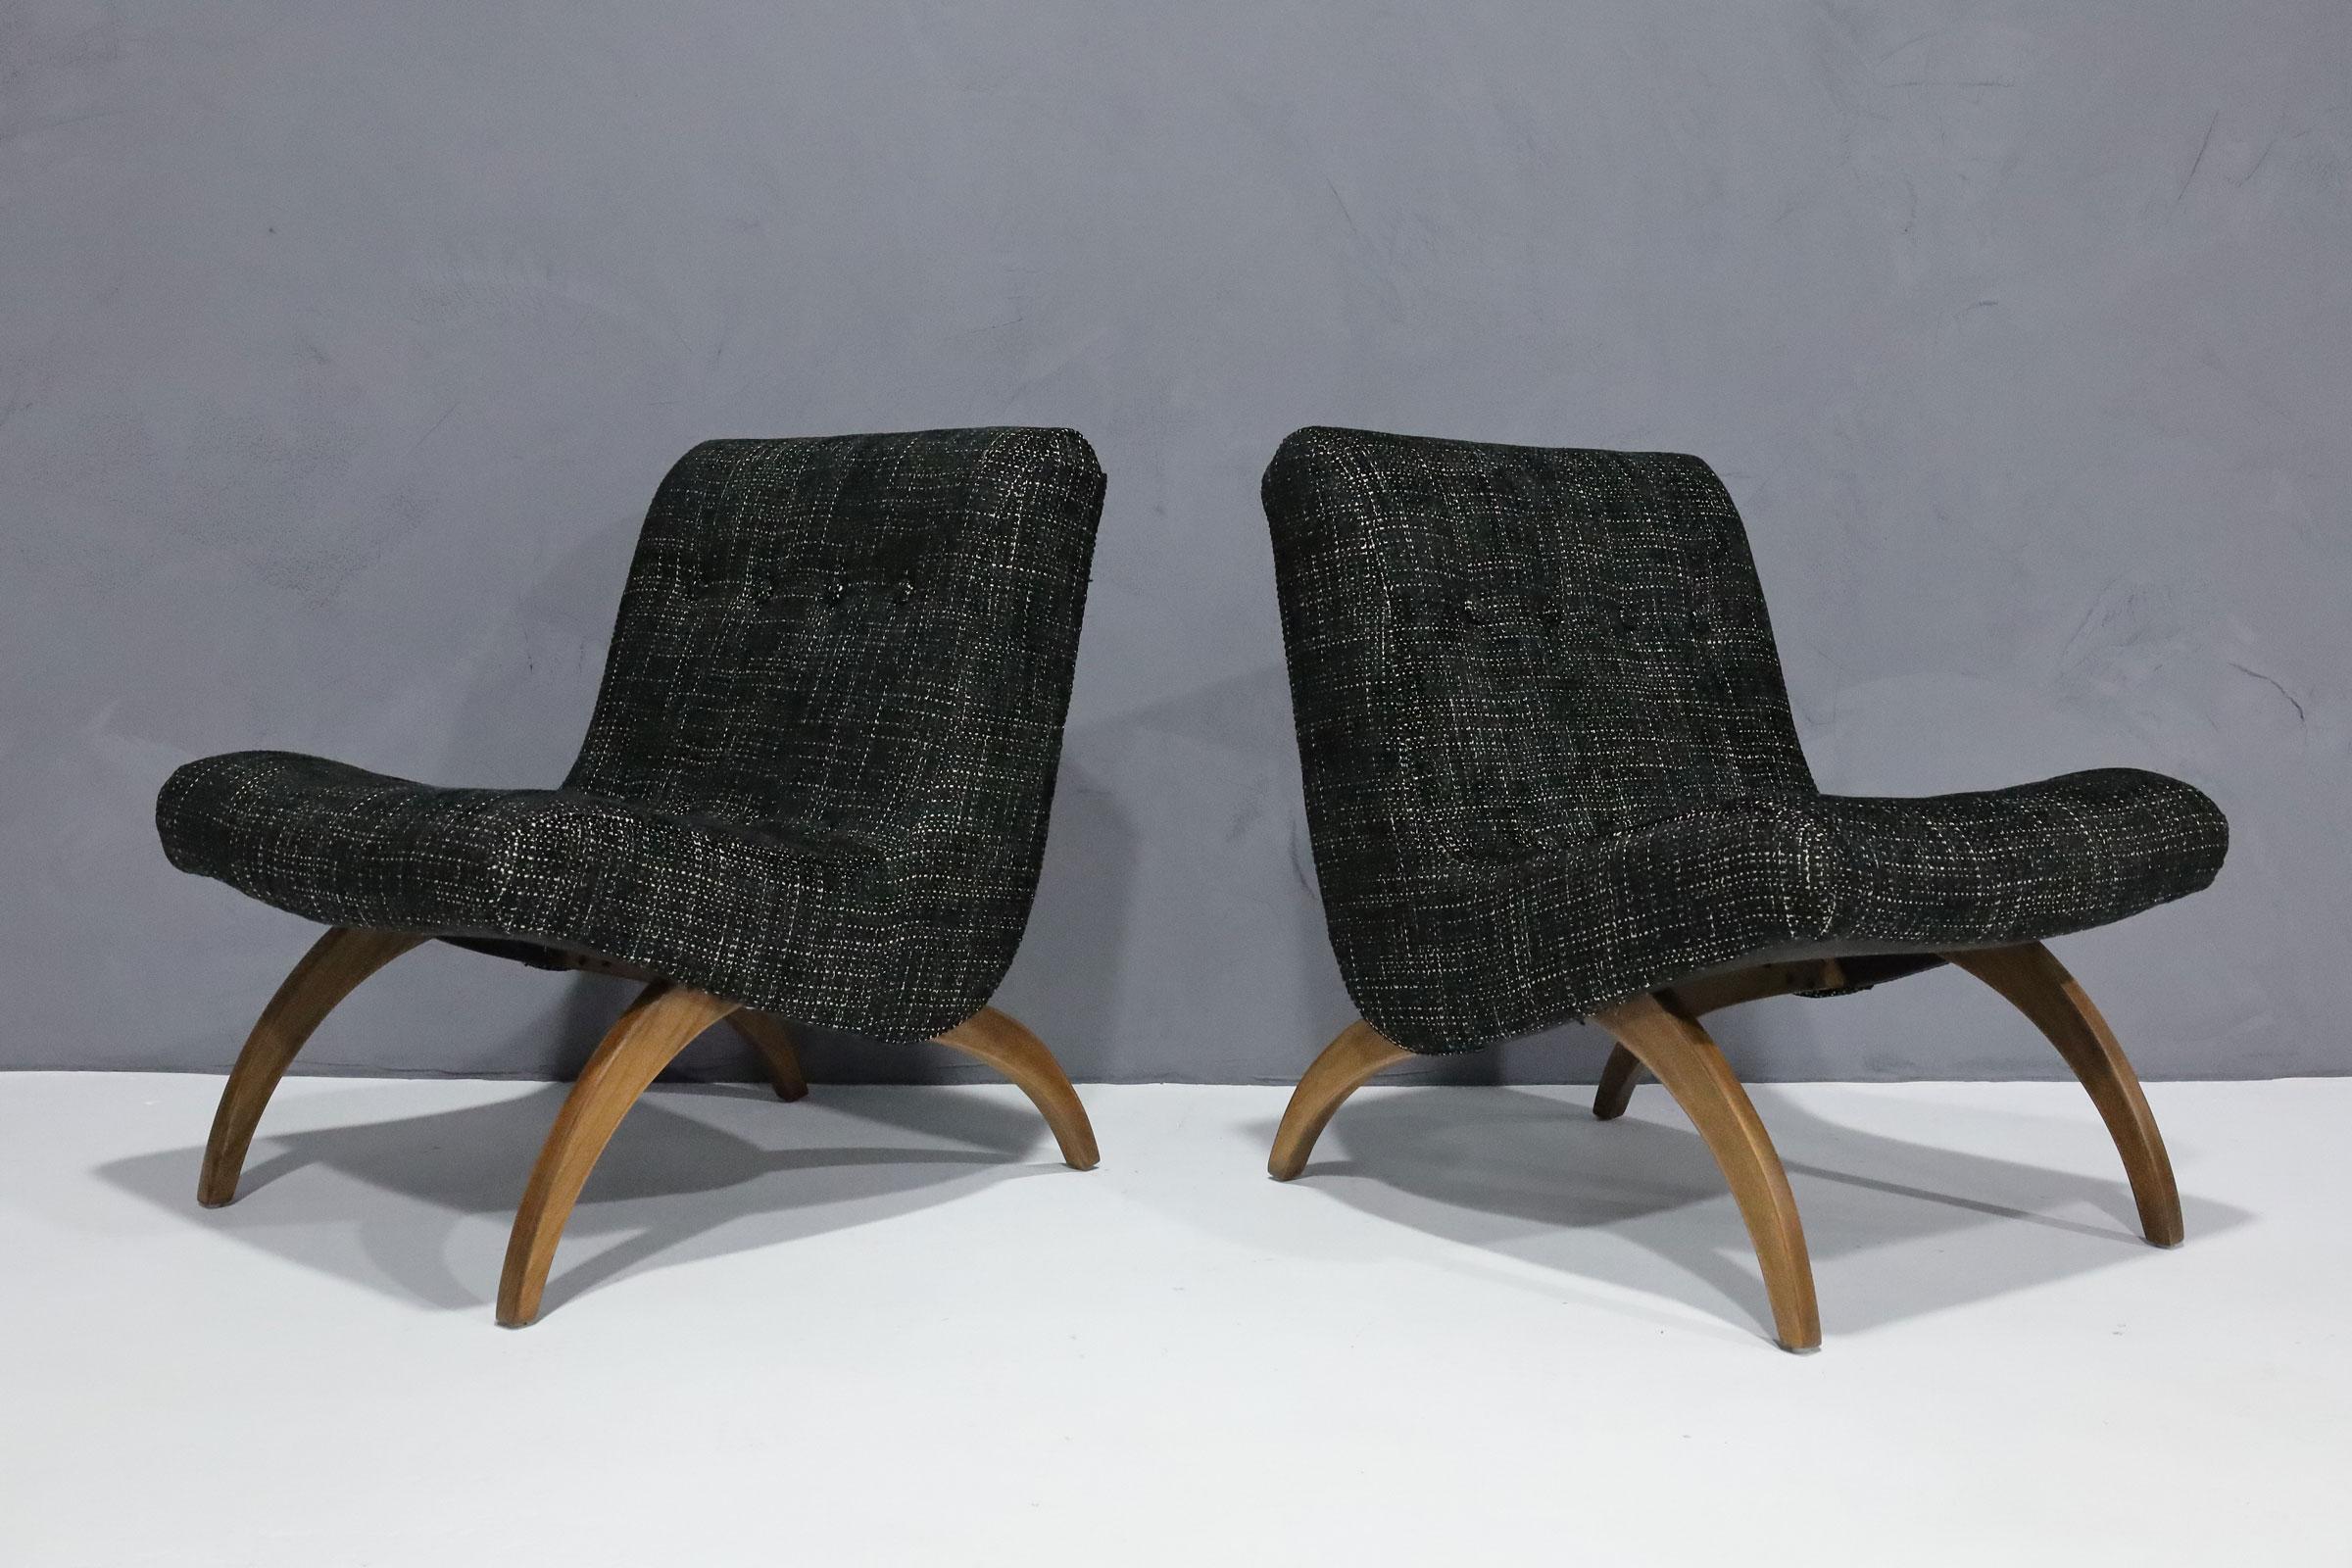 Wir haben diese von Milo Baughman entworfenen Schaufelstühle neu gepolstert und aufgearbeitet. Tolle Linien und sehr bequem. Die Stühle sind robust und sehen in einem hübschen Schwarz mit cremefarbenem Geflecht großartig aus. Gestempelt April 1958.